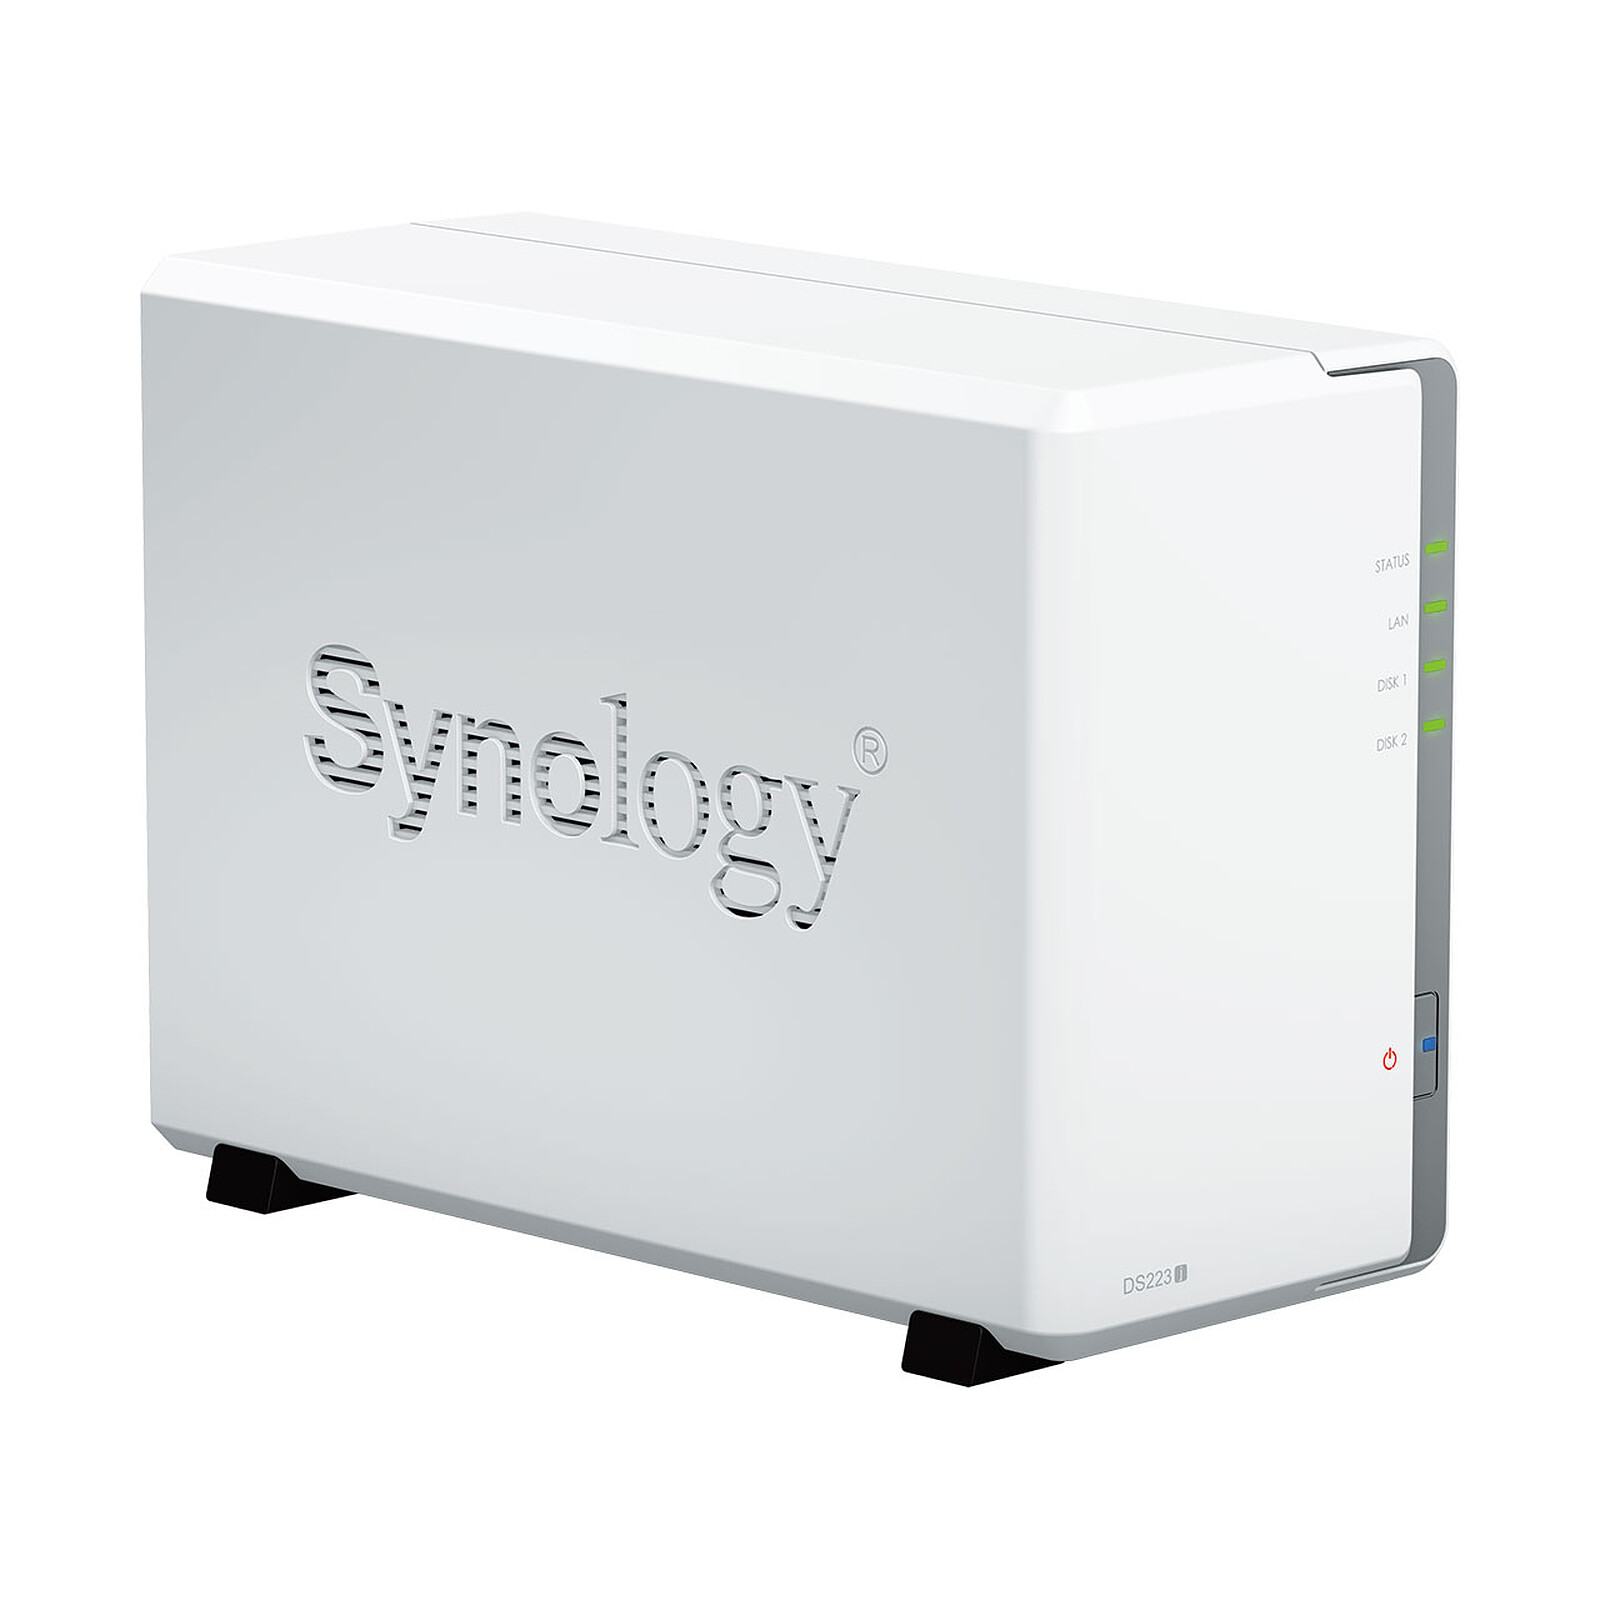 Synology DiskStation DS223 - Servidor NAS - LDLC